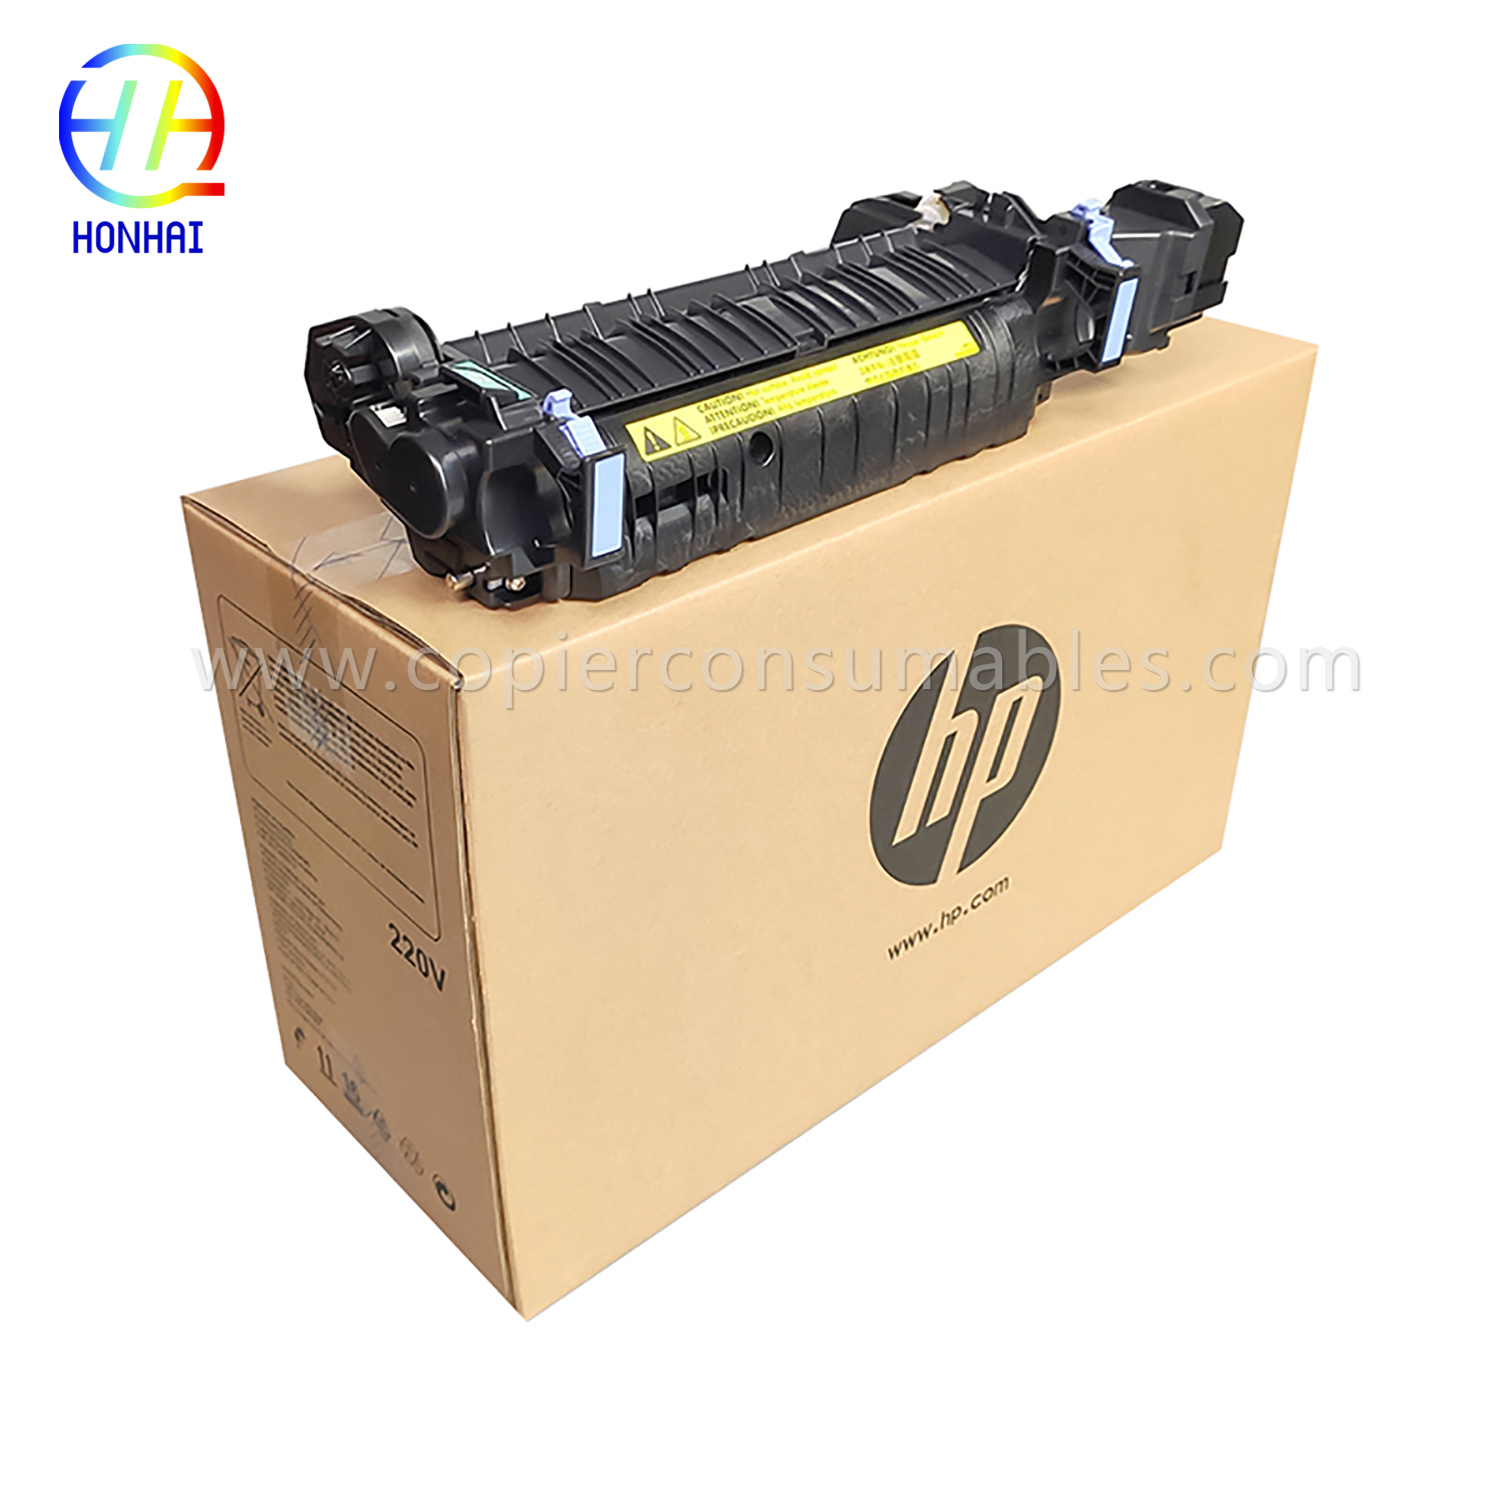 Fuser Kit for HP Cp4025 (CE247A) 220V (1)